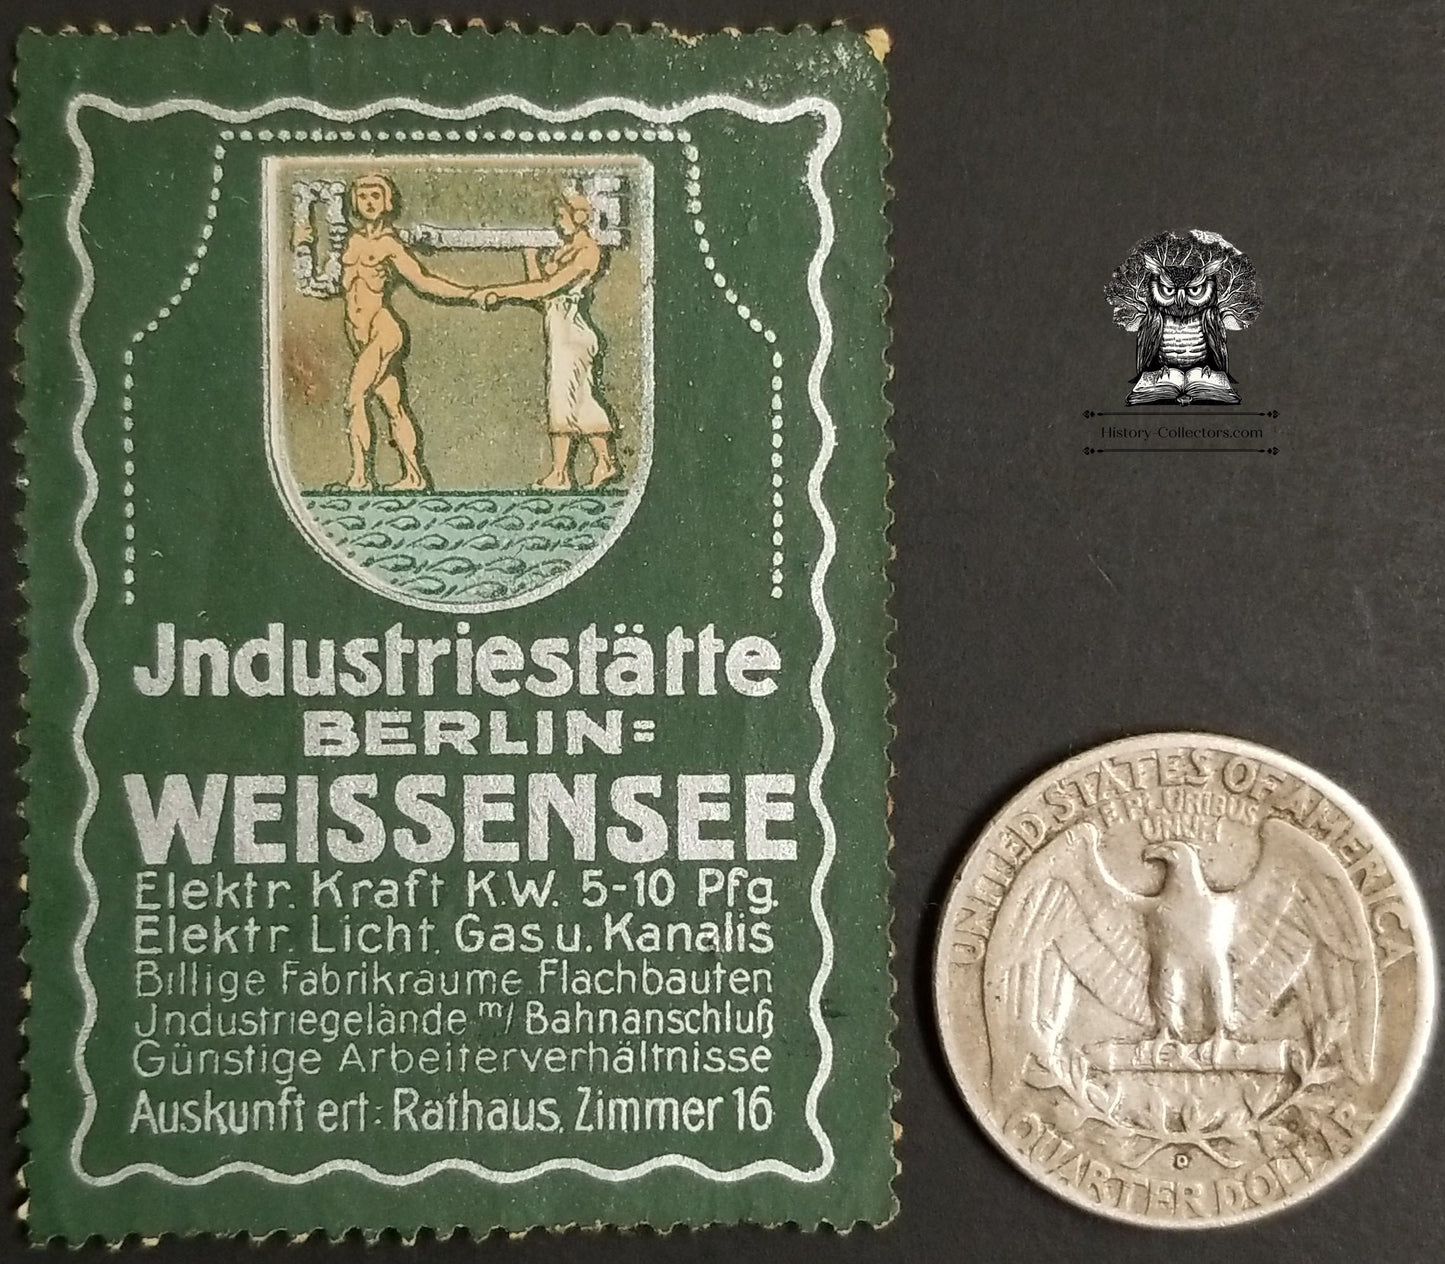 Vintage German Weissensee Industrial Site Berlin Germany Cinderella Poster Stamp